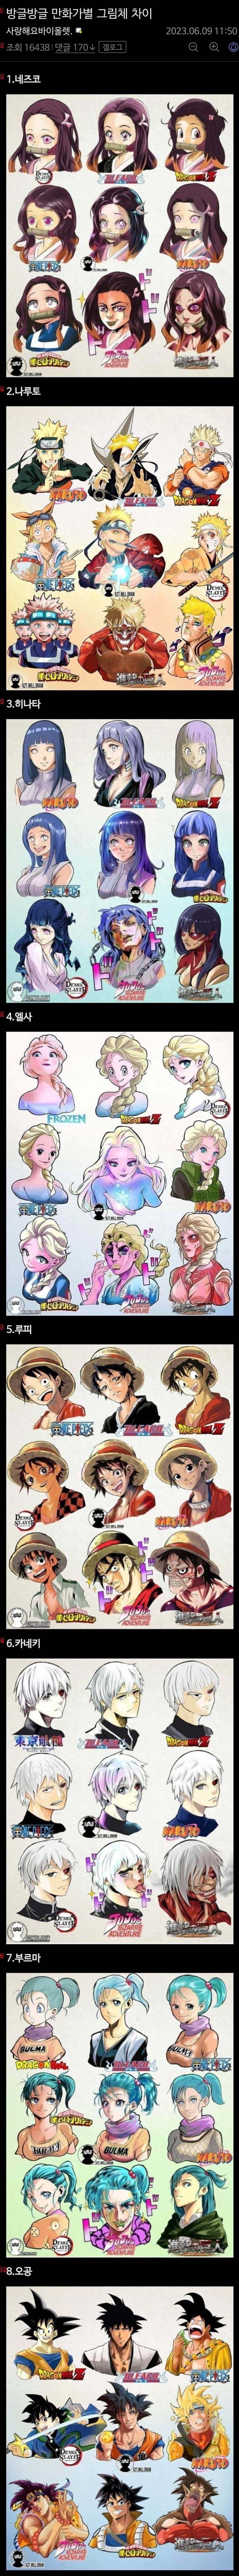 일본 만화가별 그림체 차이.jpg